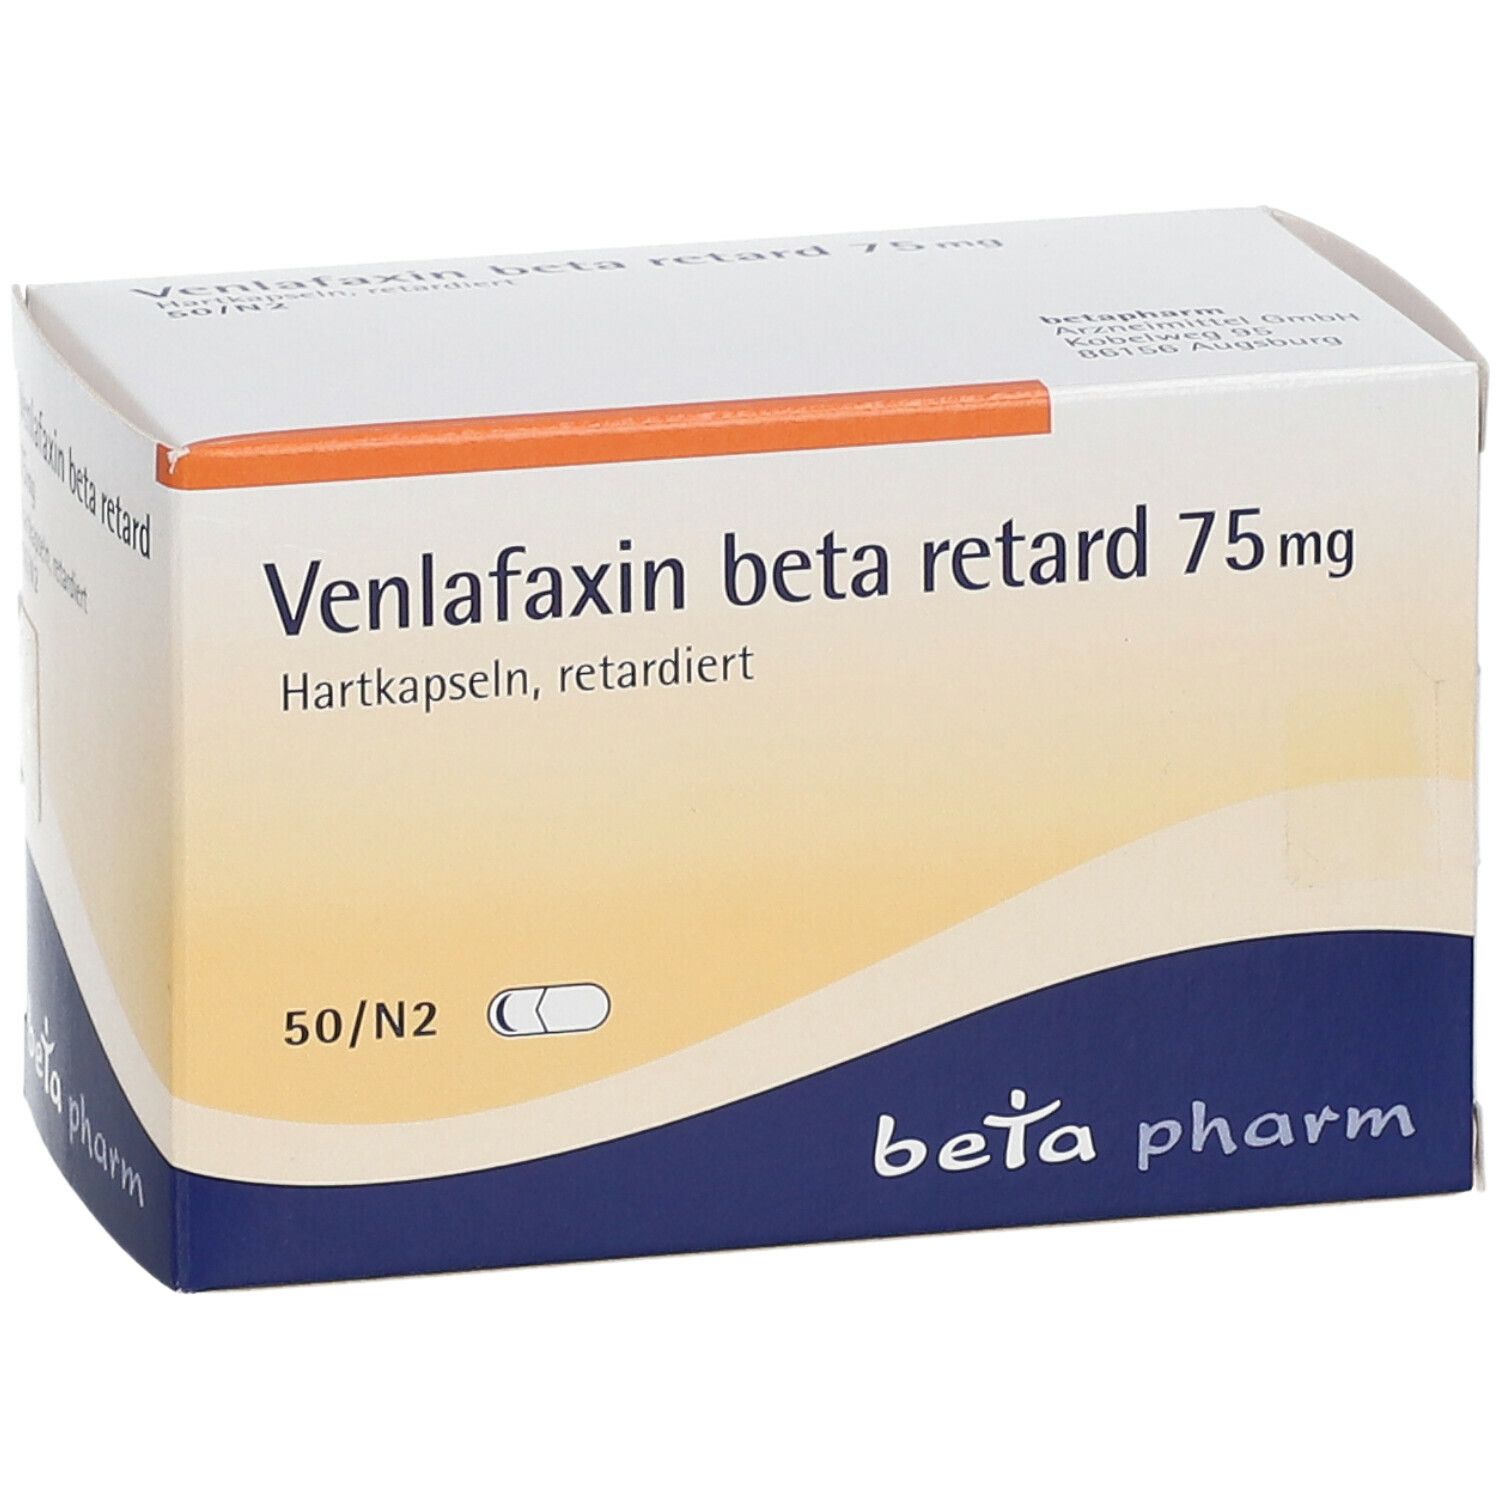 Venlafaxin beta retard 75 mg